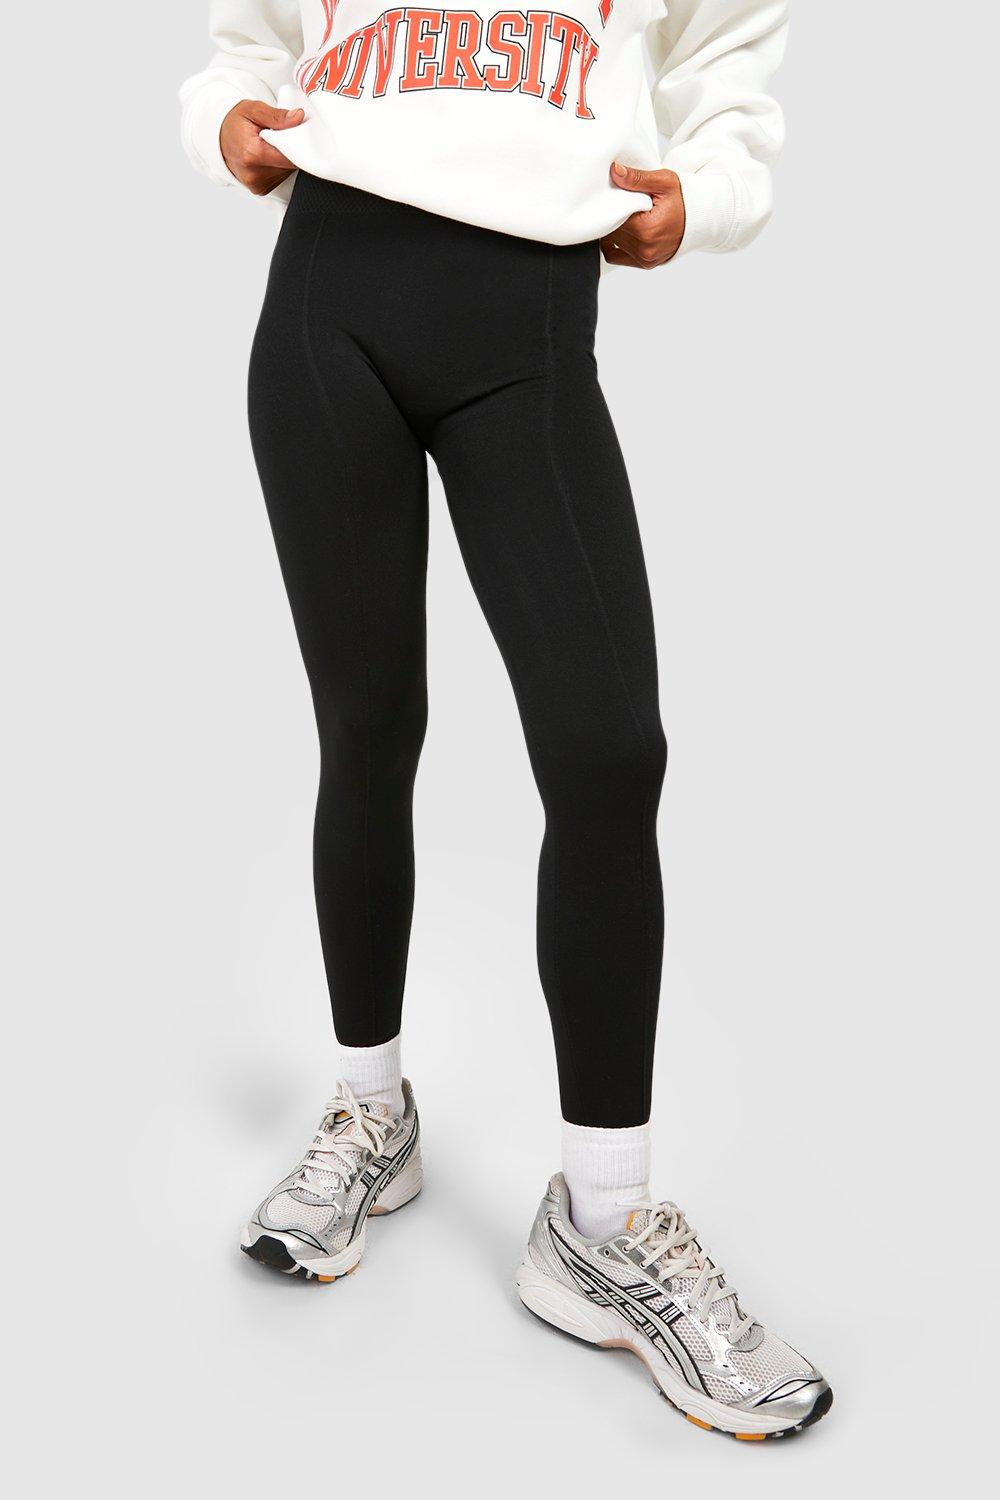 Dit zijn de 5 beste fleece legging voor hardlopende dames